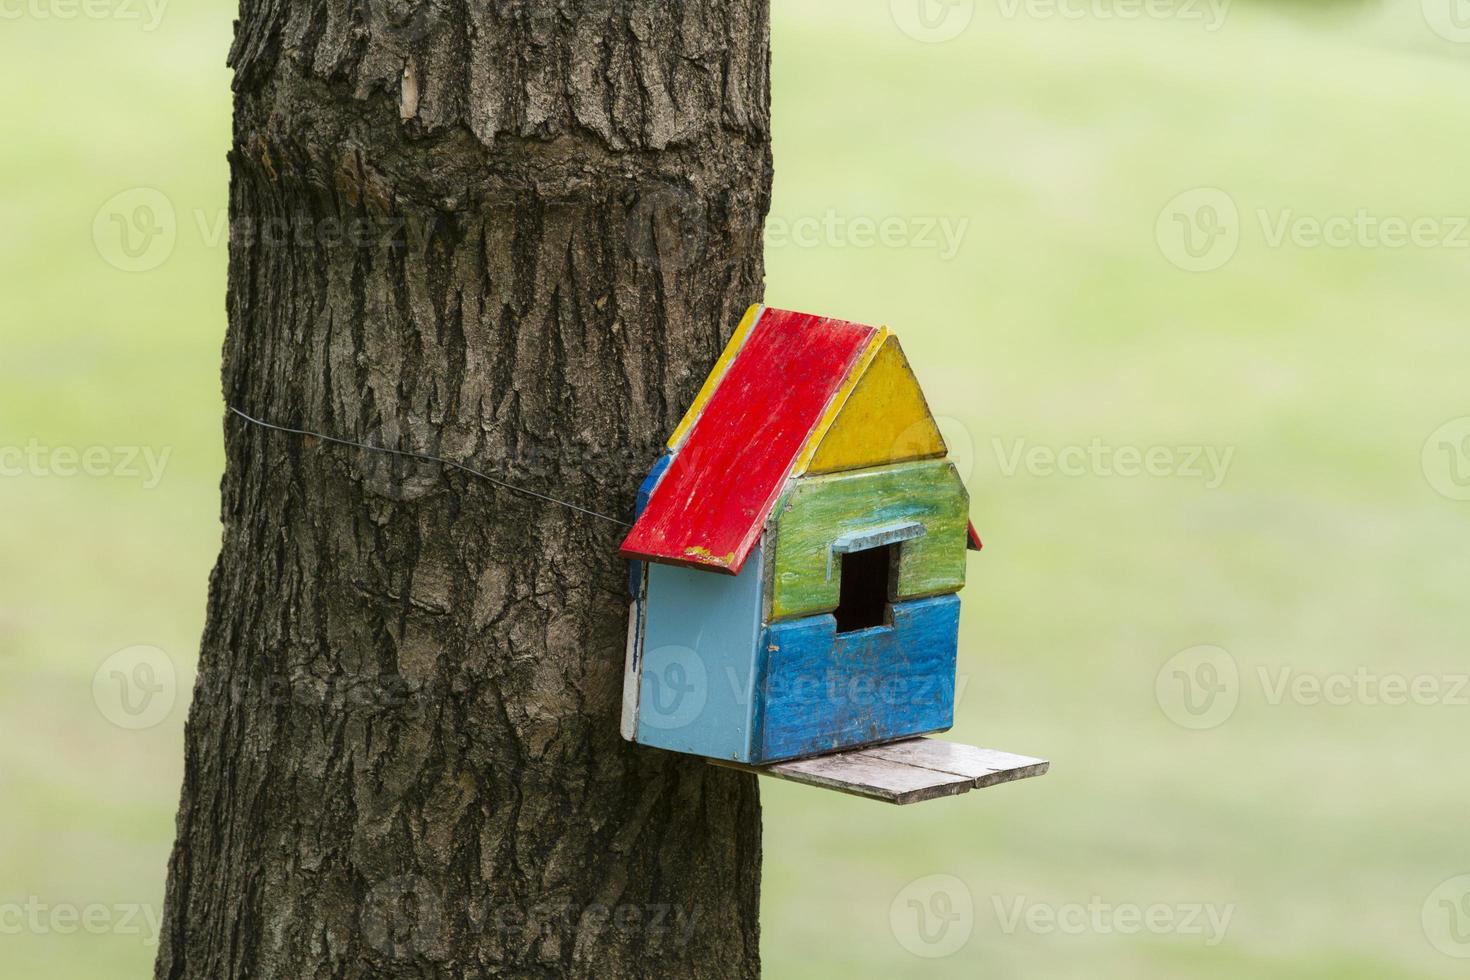 casa de pássaros caixa de nidificação pendurada no tronco da árvore foto